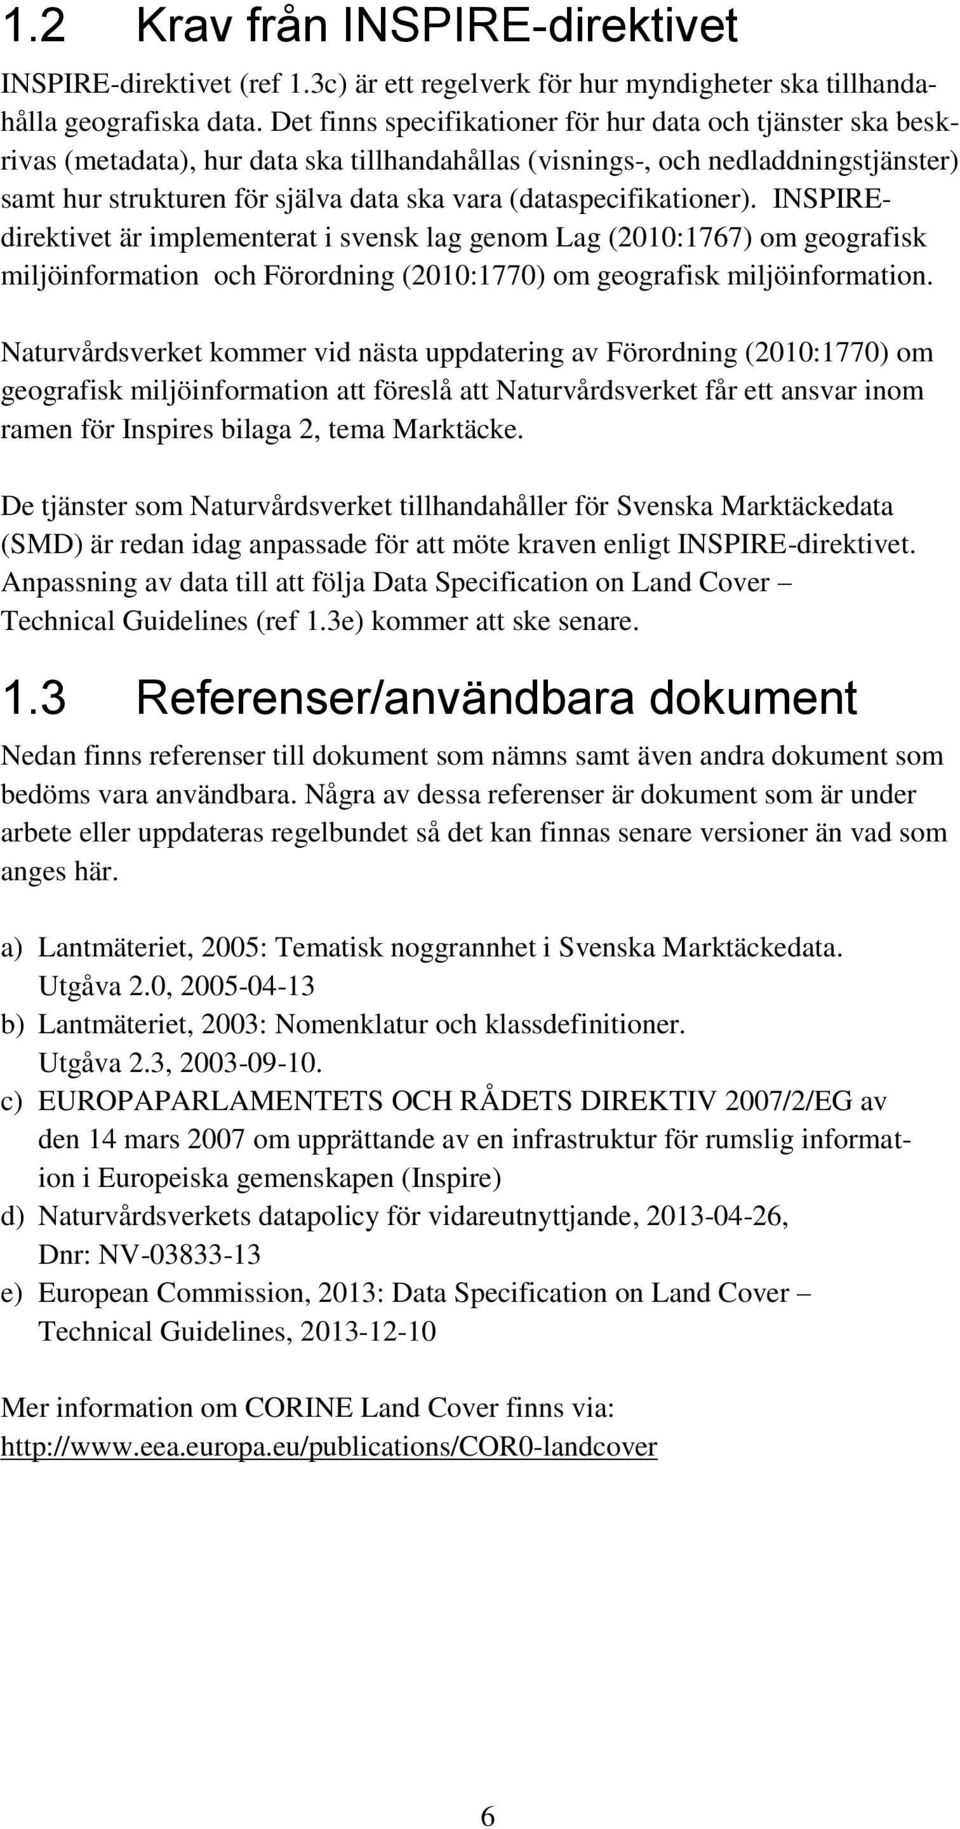 (dataspecifikationer). INSPIREdirektivet är implementerat i svensk lag genom Lag (2010:1767) om geografisk miljöinformation och Förordning (2010:1770) om geografisk miljöinformation.